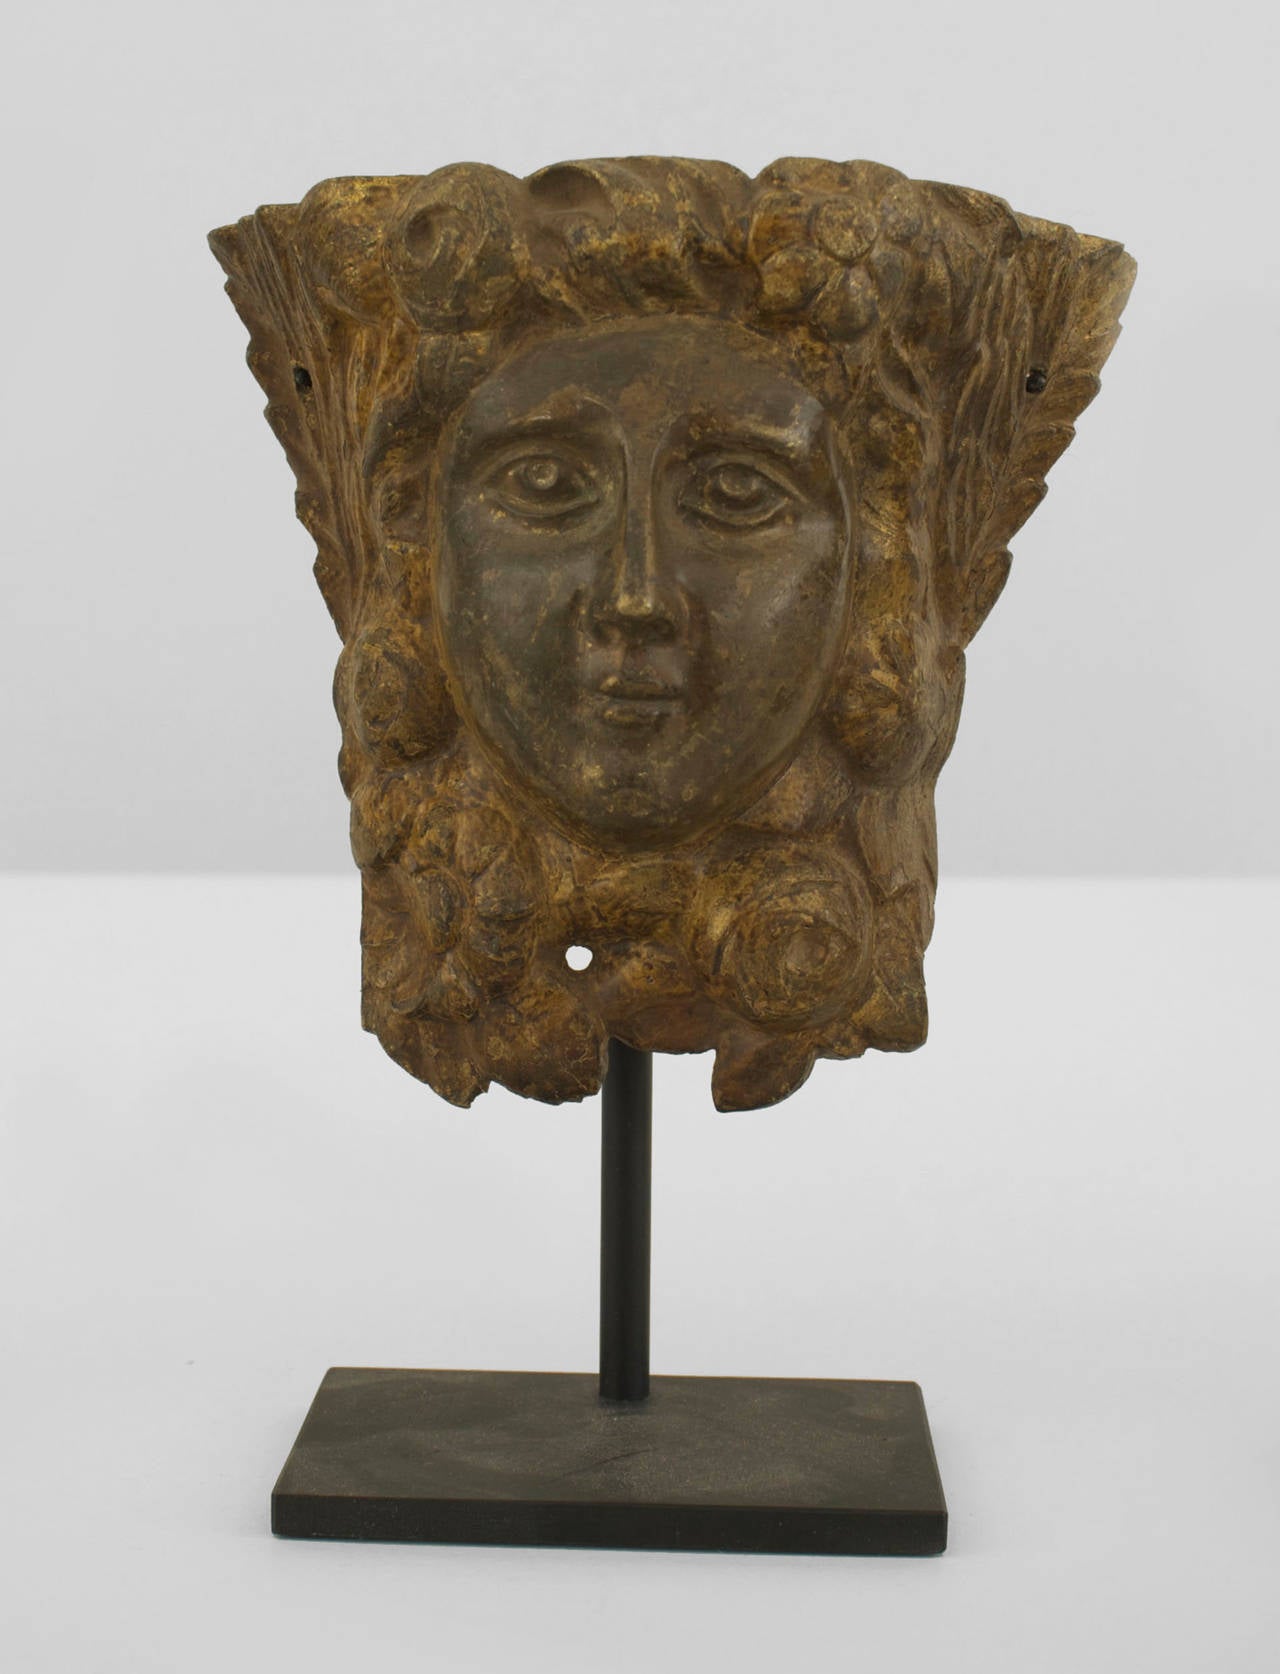 4 masques italiens en bronze de style néo-classique (19e siècle) représentant un visage de femme classique, montés sur une base rectangulaire moderne en métal ébonisé. (PRIX UNIQUE) (Hauteur variable de 7